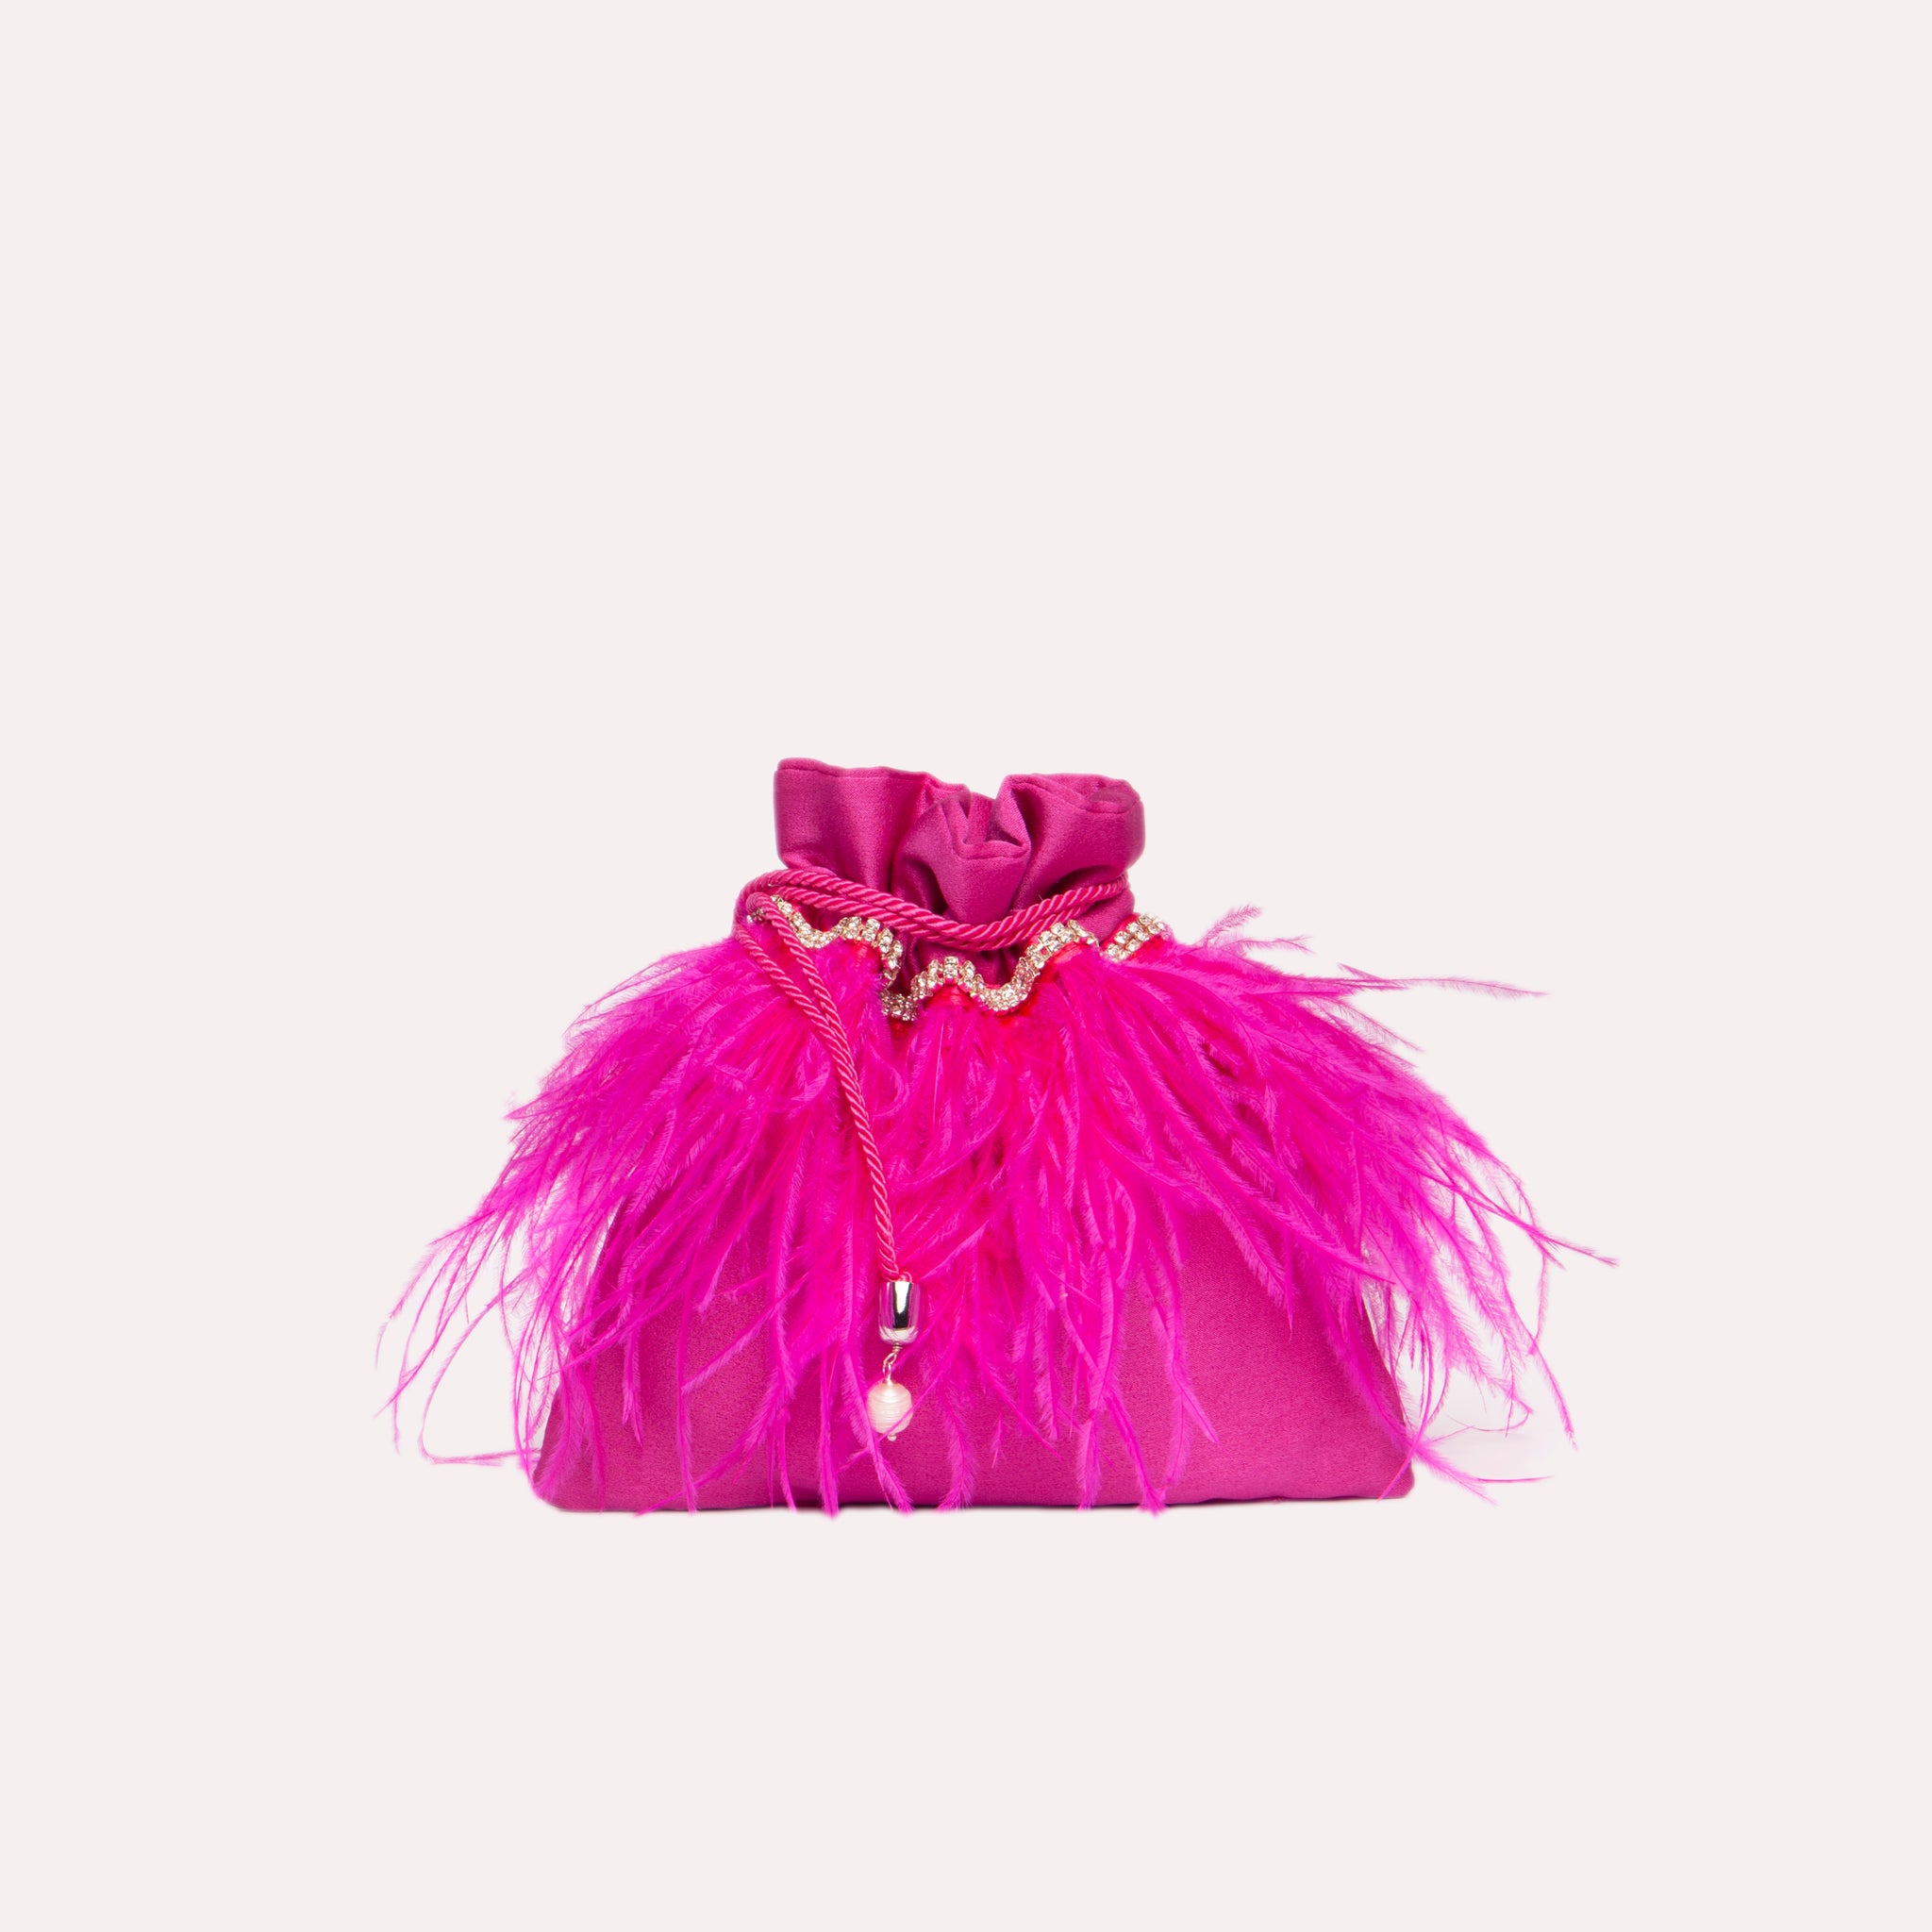 Mini Feathers Bag in colorazione fucsia